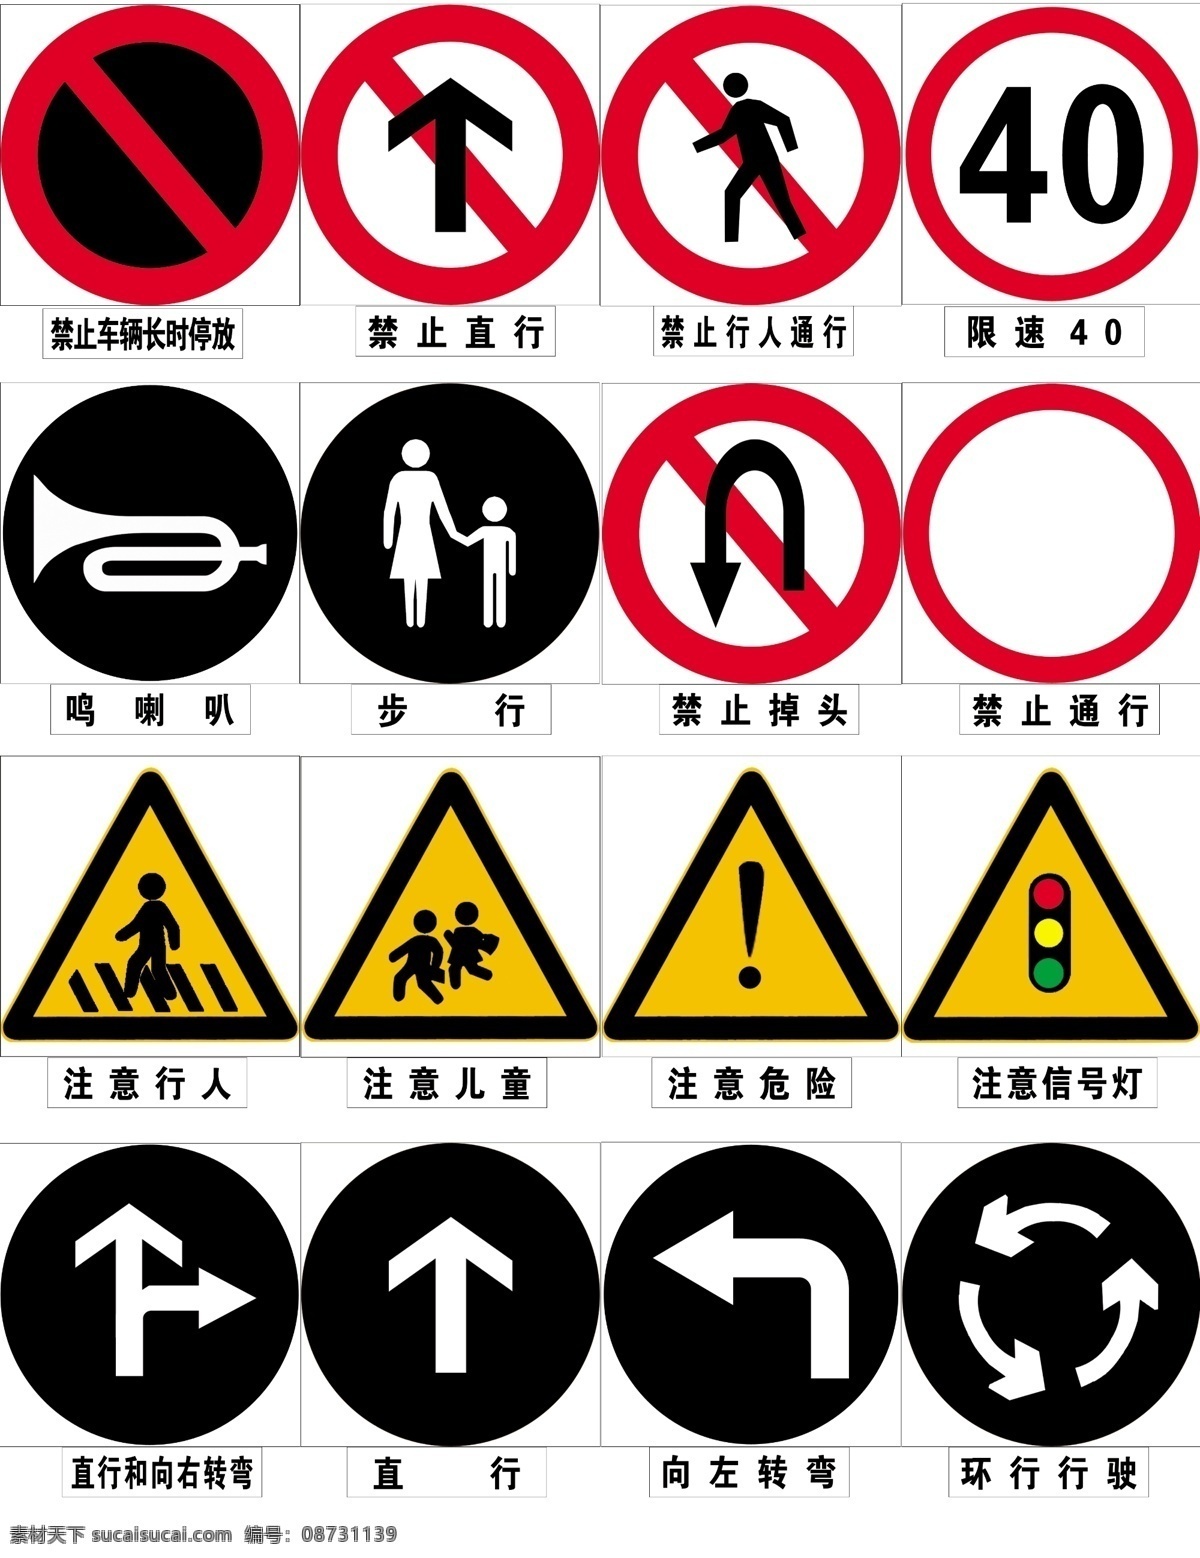 交通标志 禁止掉头 鸣喇叭 注意行人 禁止行人通行 步行 注意信号灯 环形行驶 直行 右 转弯 分层 源文件